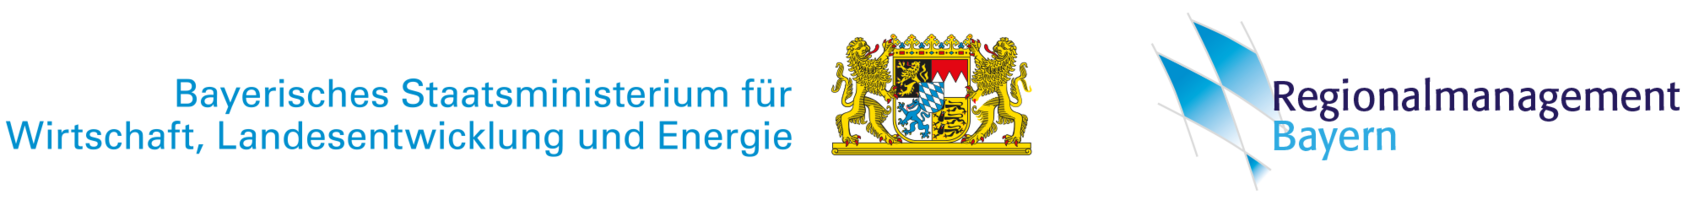 Abbildung Logo das Wappen Bayerns mit der Beschriftung Bayerisches Staatsministerium für Wirtschaft, Landesentwicklung und Energie